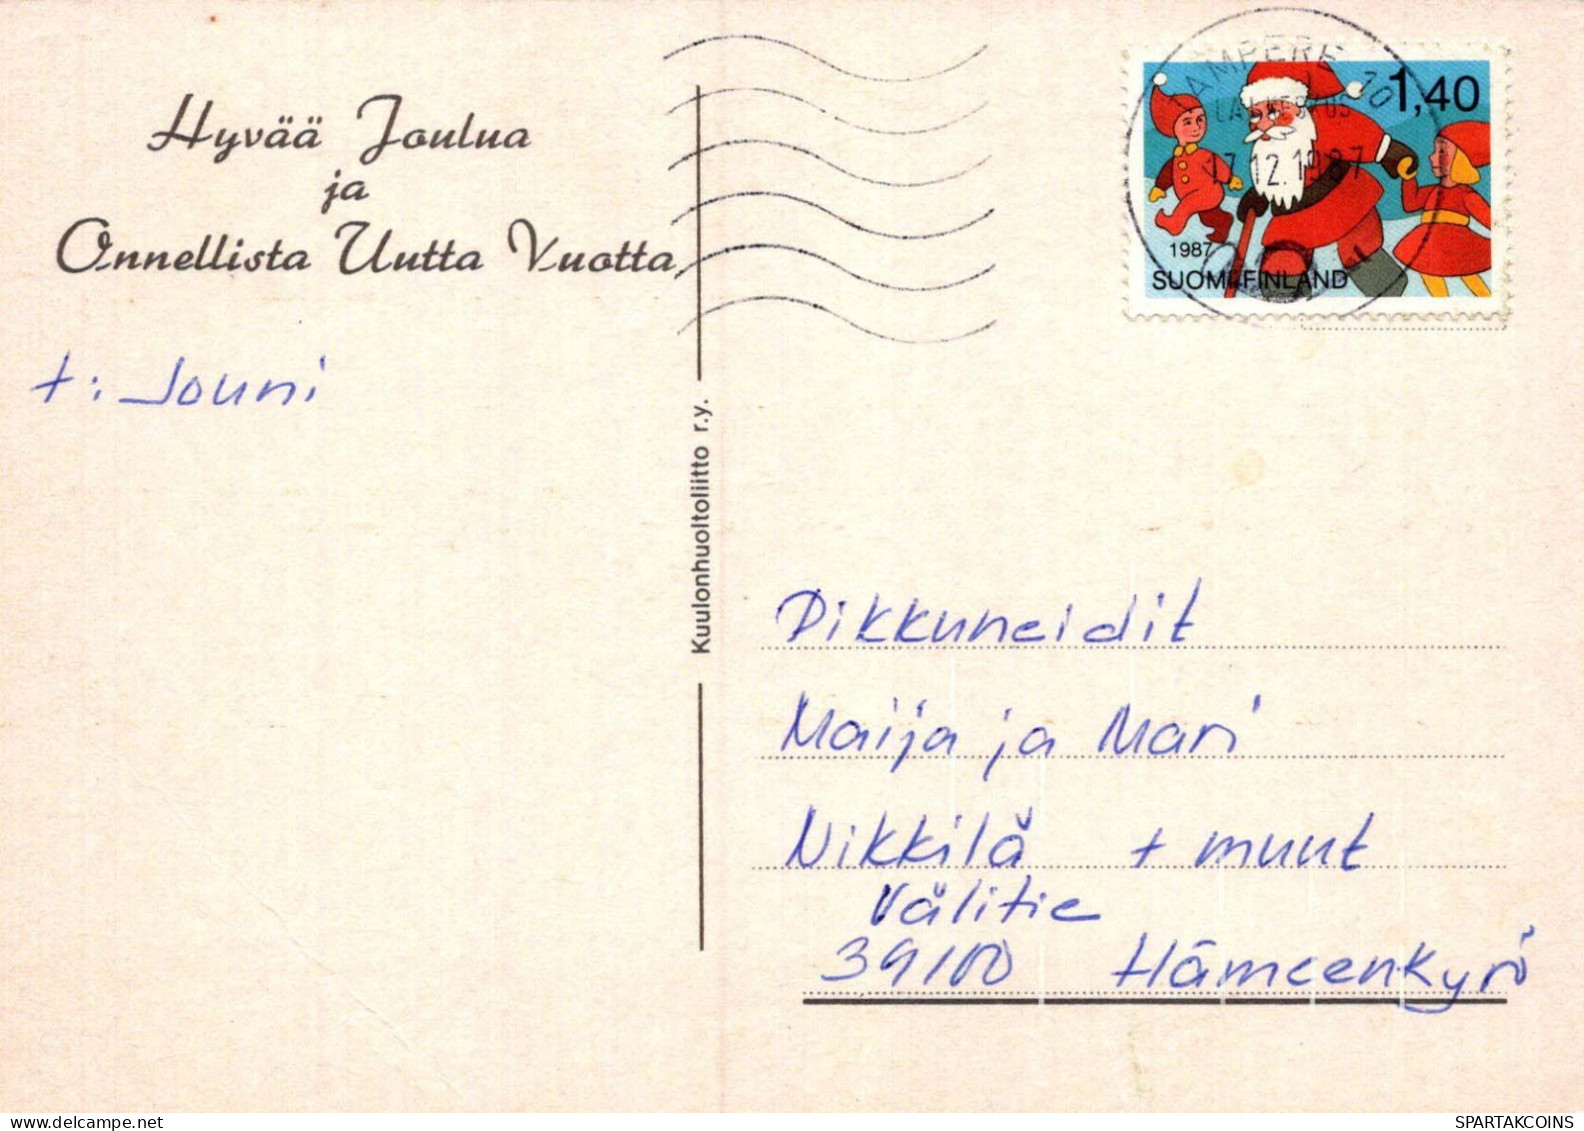 WEIHNACHTSMANN SANTA CLAUS Neujahr Weihnachten GNOME Vintage Ansichtskarte Postkarte CPSM #PAW522.A - Santa Claus